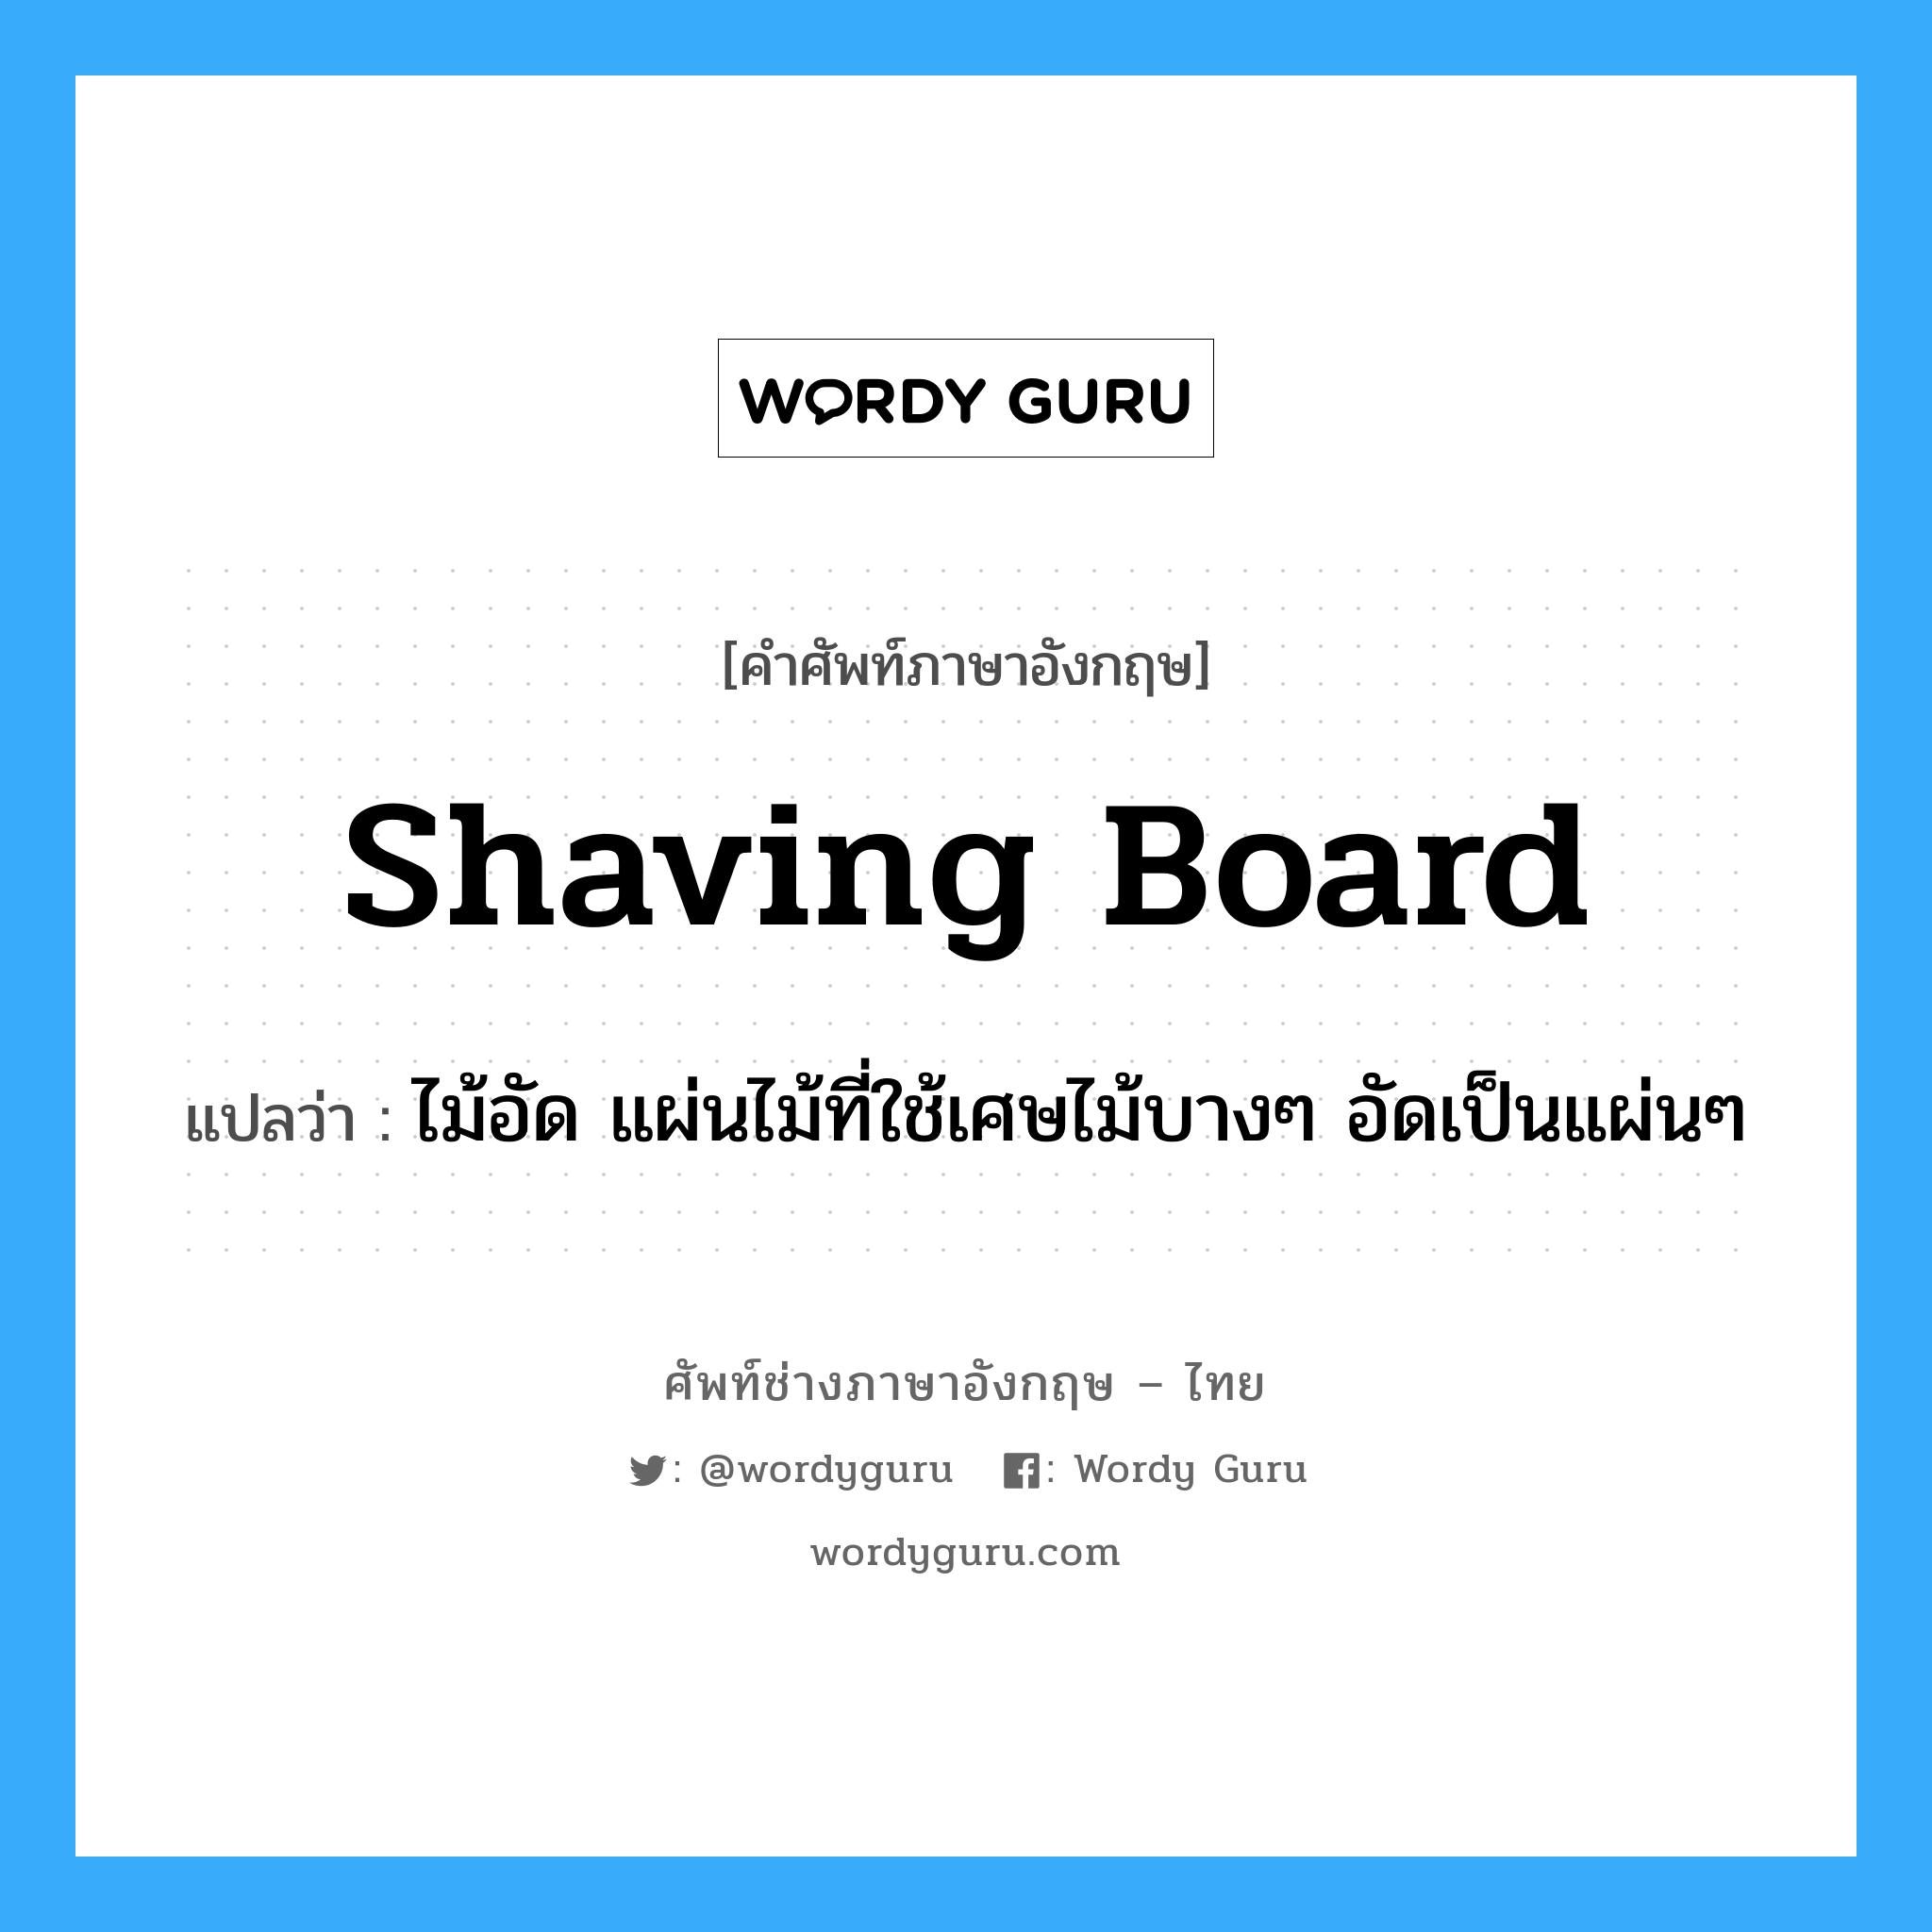 shaving-board แปลว่า?, คำศัพท์ช่างภาษาอังกฤษ - ไทย shaving board คำศัพท์ภาษาอังกฤษ shaving board แปลว่า ไม้อัด แผ่นไม้ที่ใช้เศษไม้บางๆ อัดเป็นแผ่นๆ